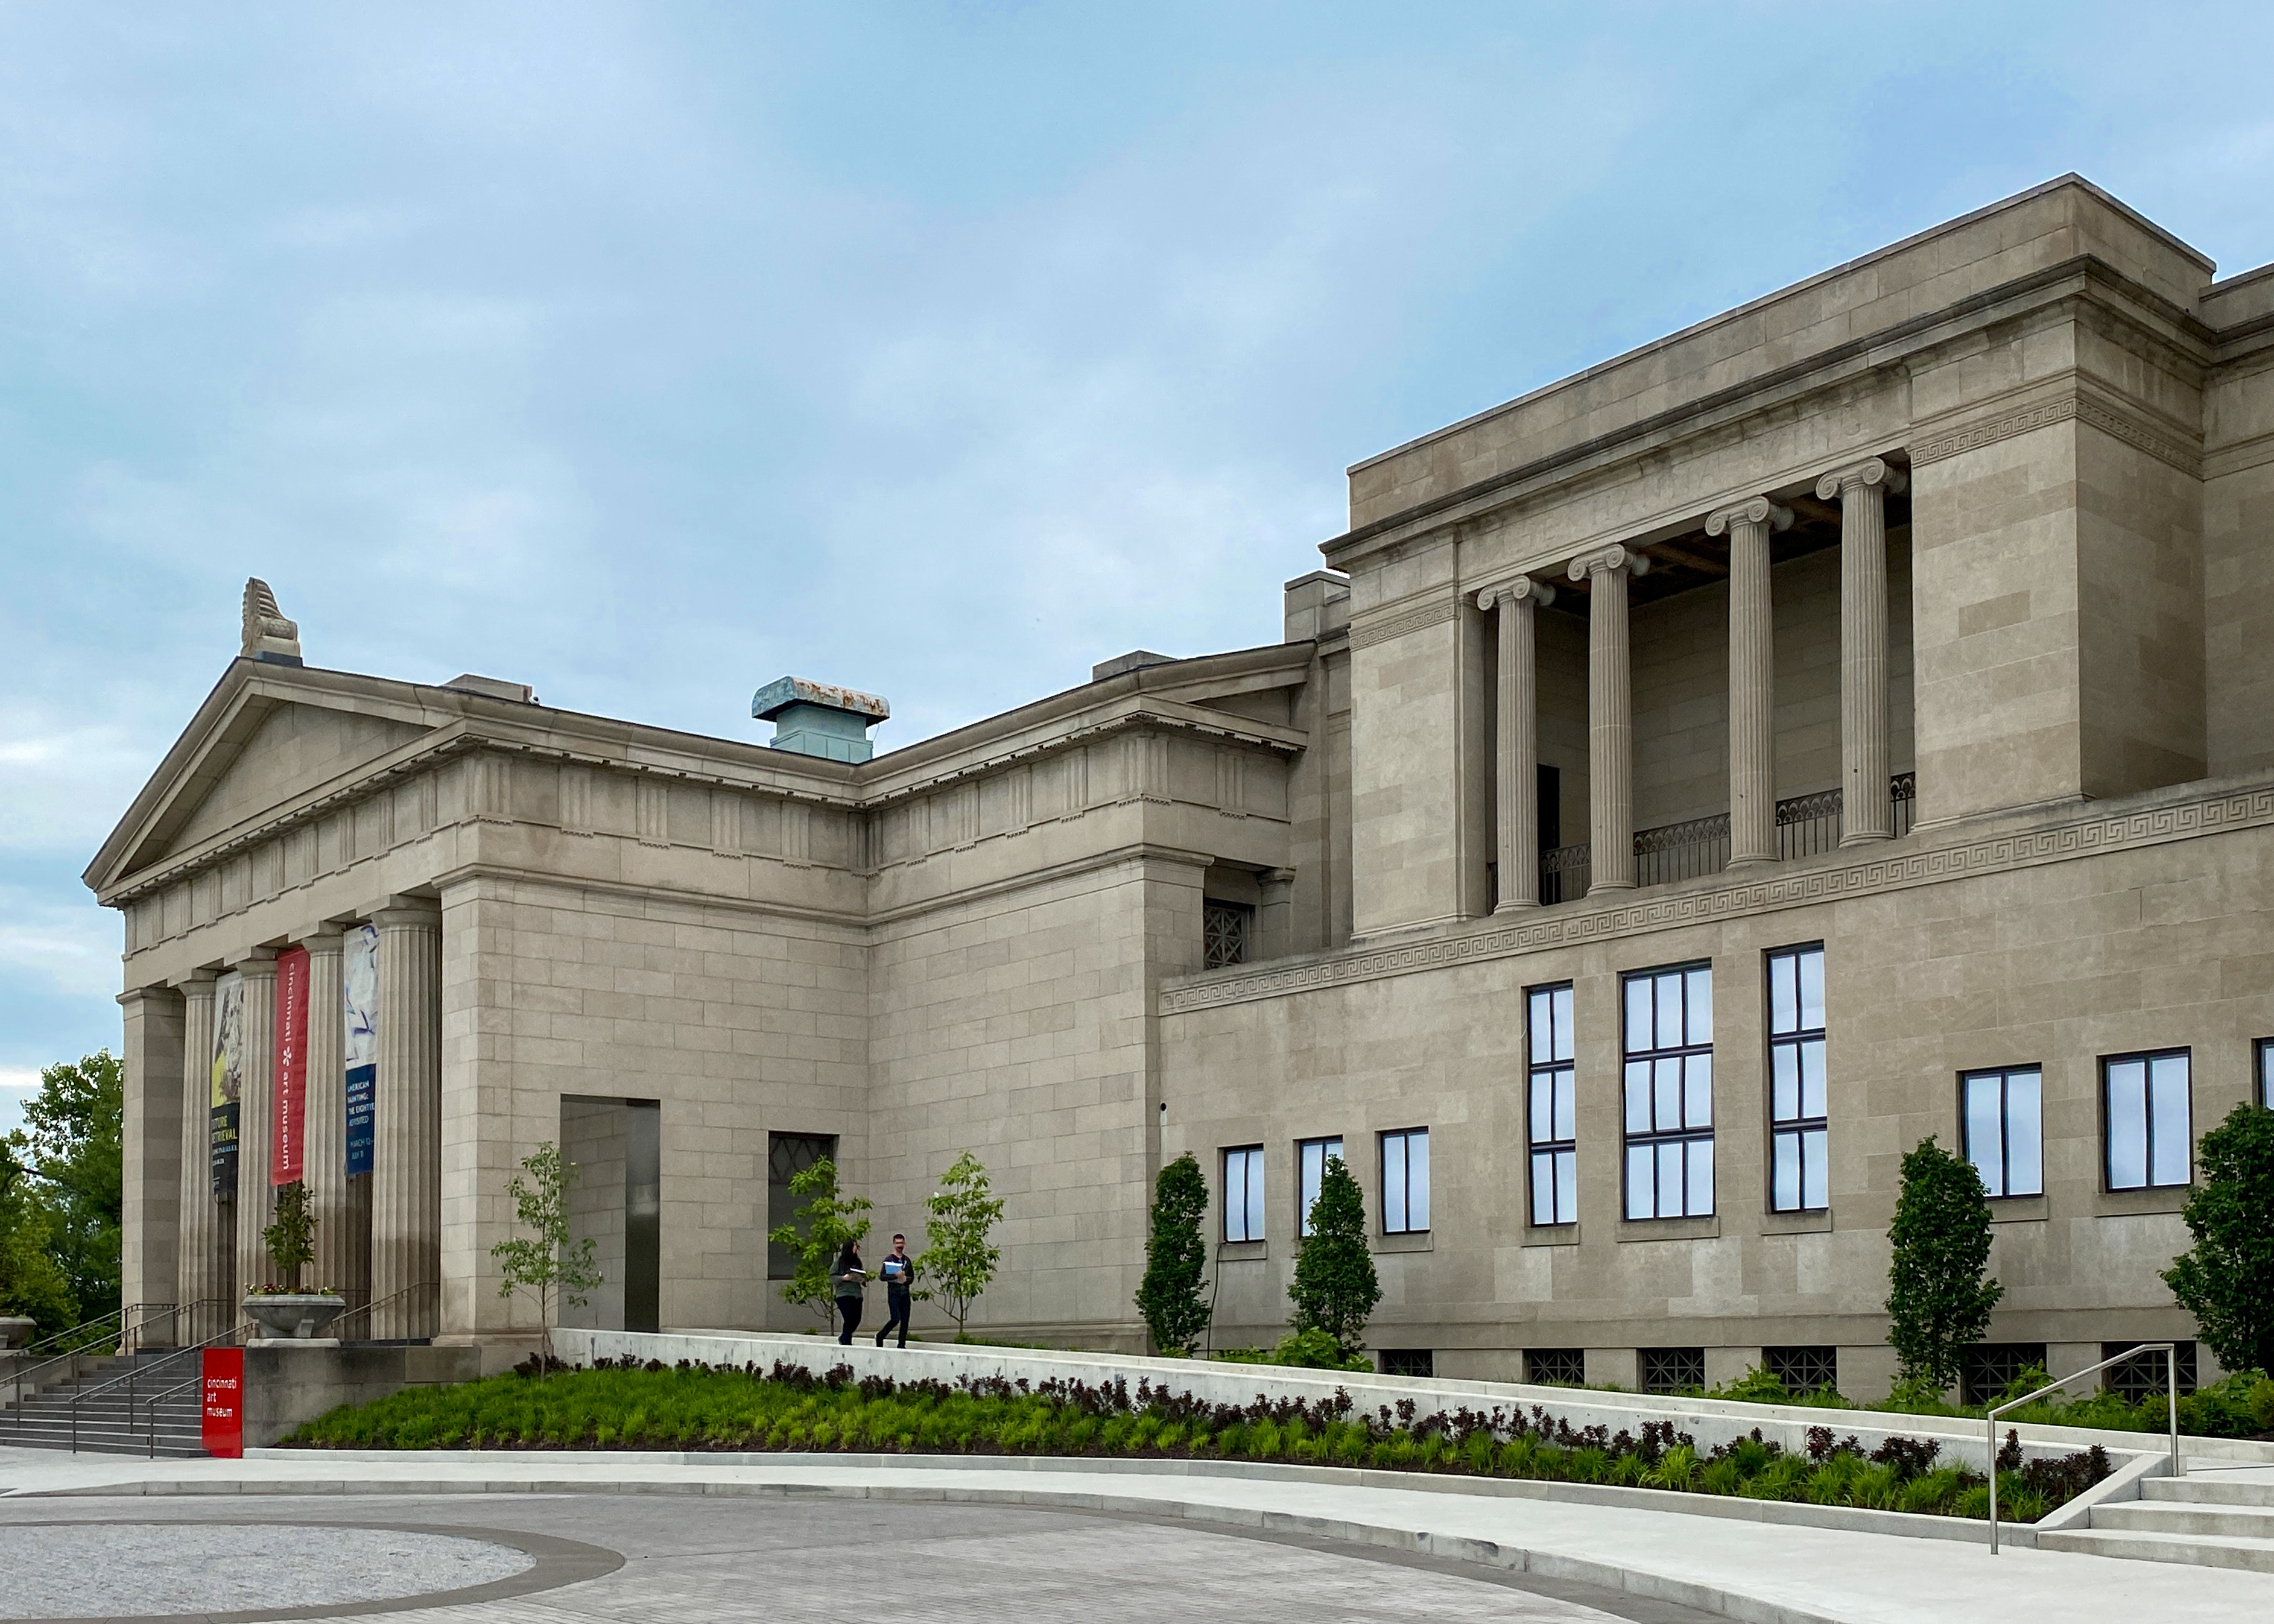 The Cincinnati Art Museum, located on the west side of [[Eden Park (Cincinnati)|Eden Park]]